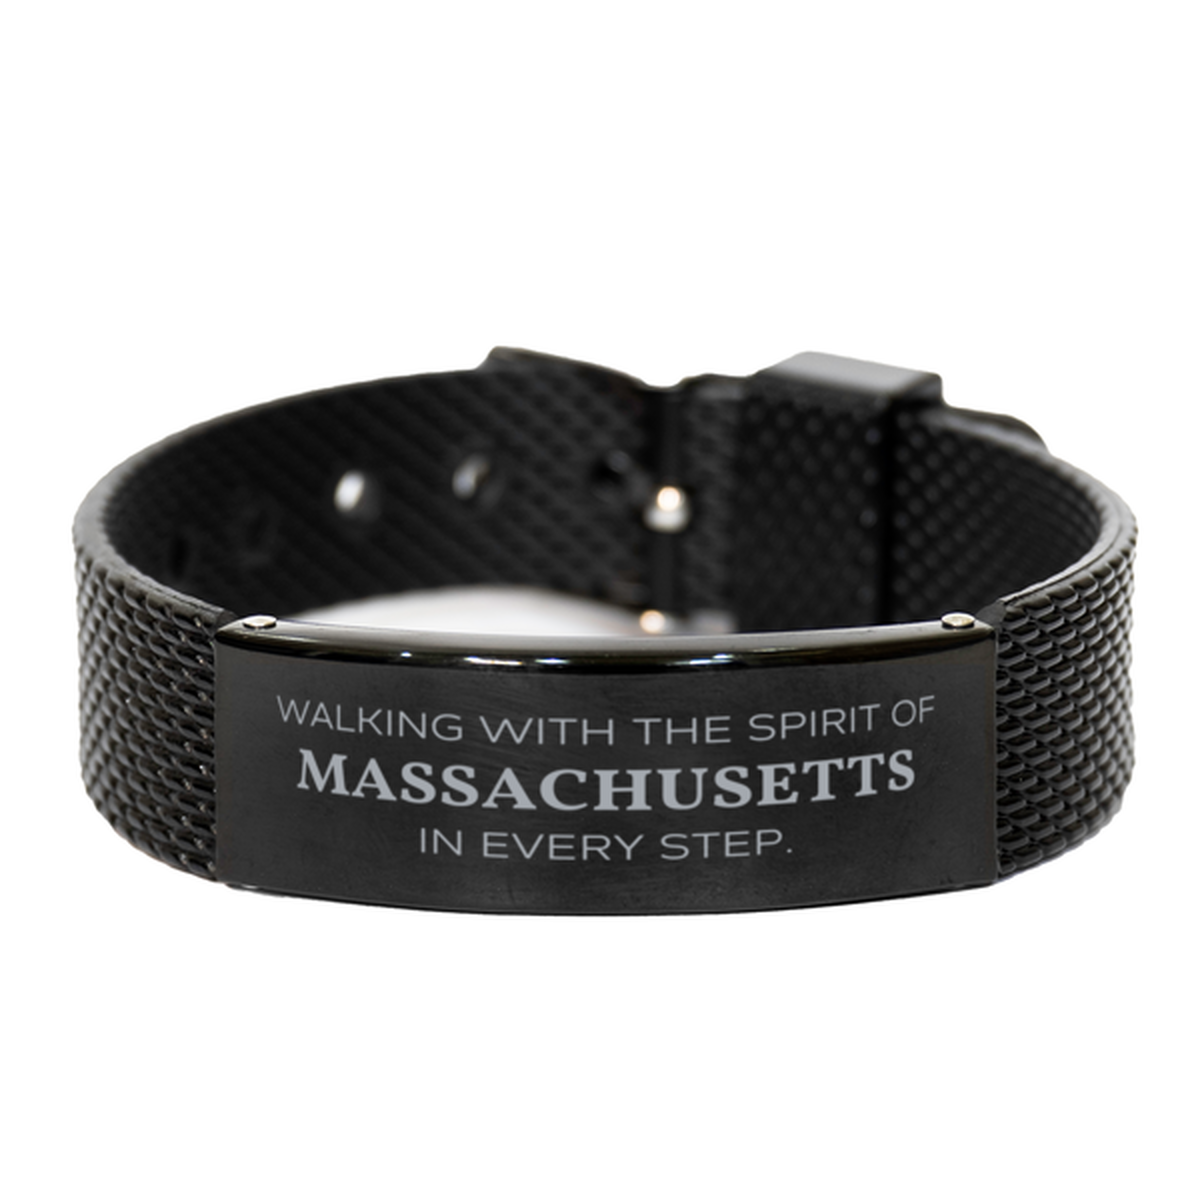 Massachusetts Gifts, Walking with the spirit, Love Massachusetts Birthday Christmas Black Shark Mesh Bracelet For Massachusetts People, Men, Women, Friends